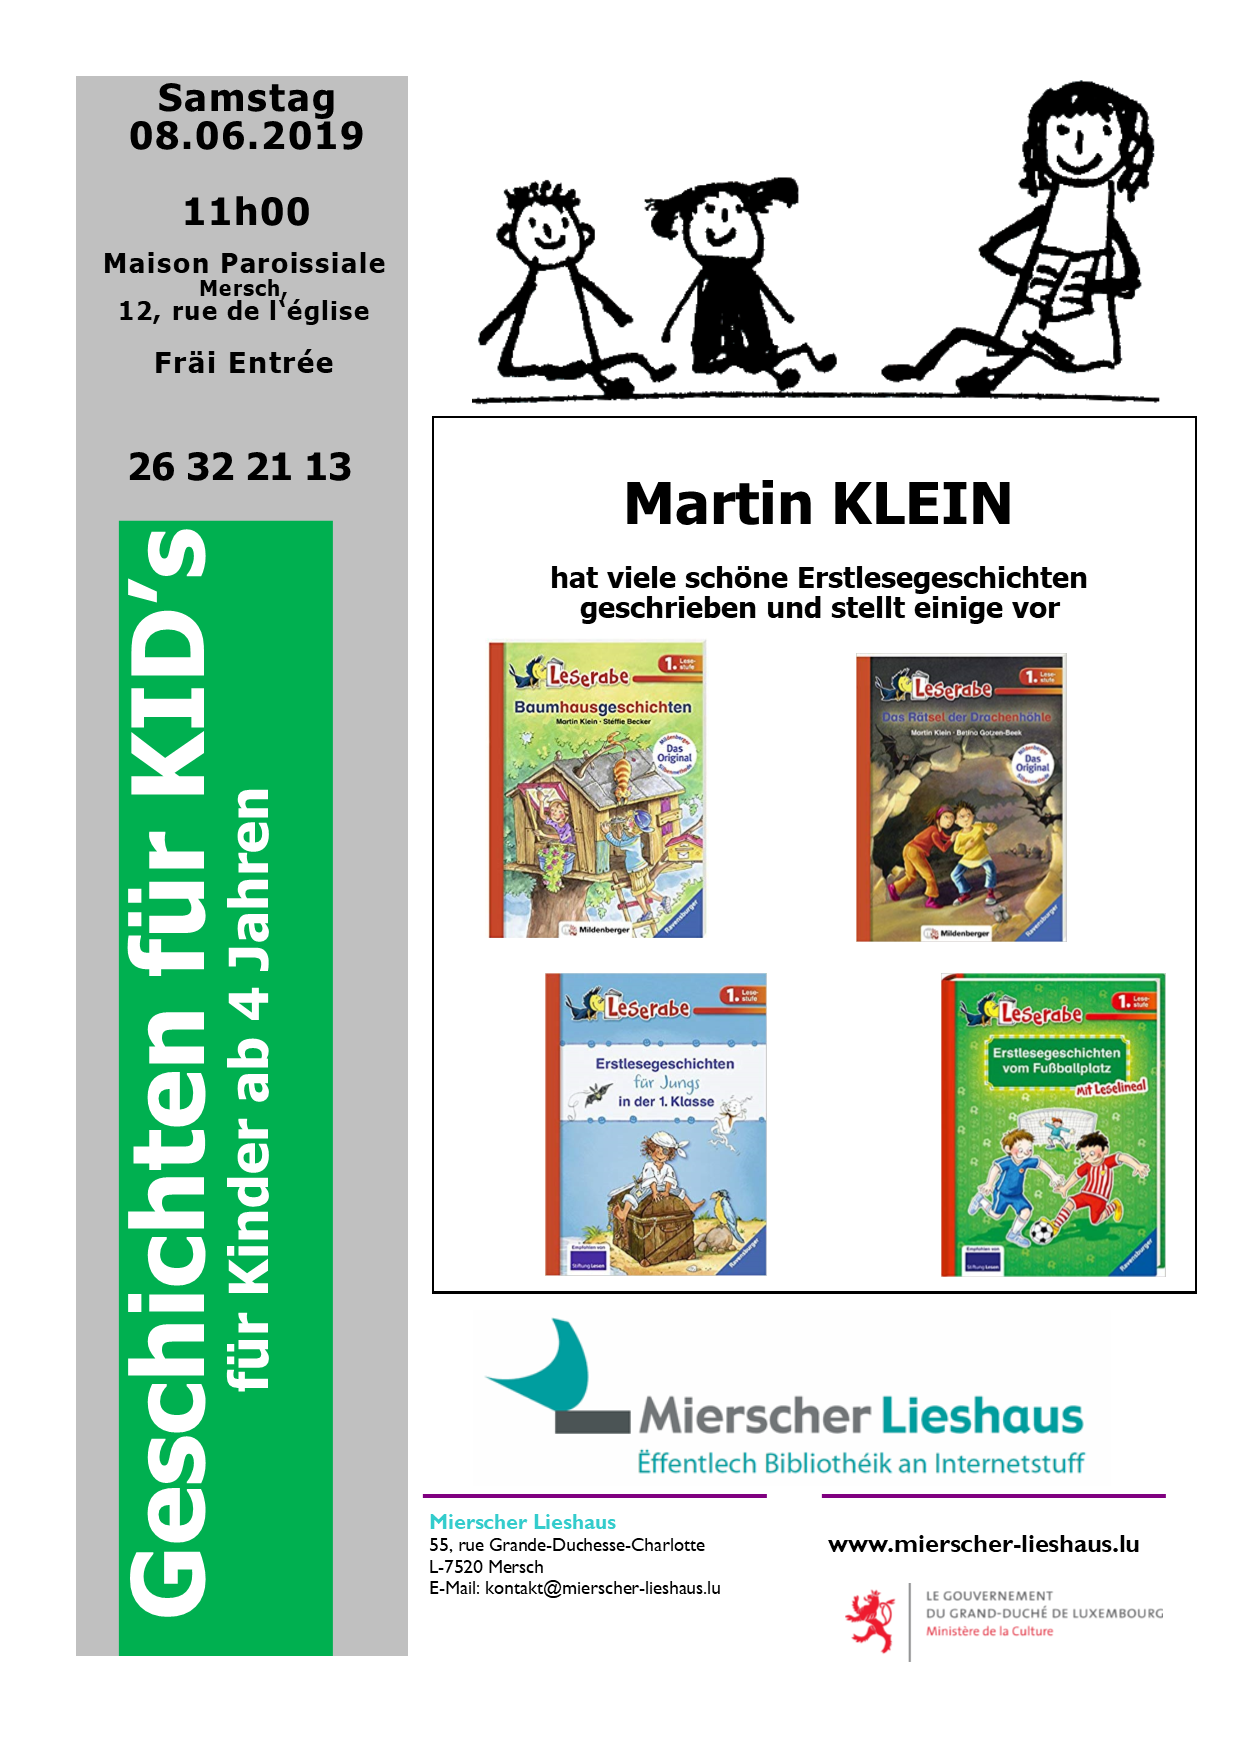 Geschichten für KID's: Martin KLEIN stellt Erstlesegeschichten vor